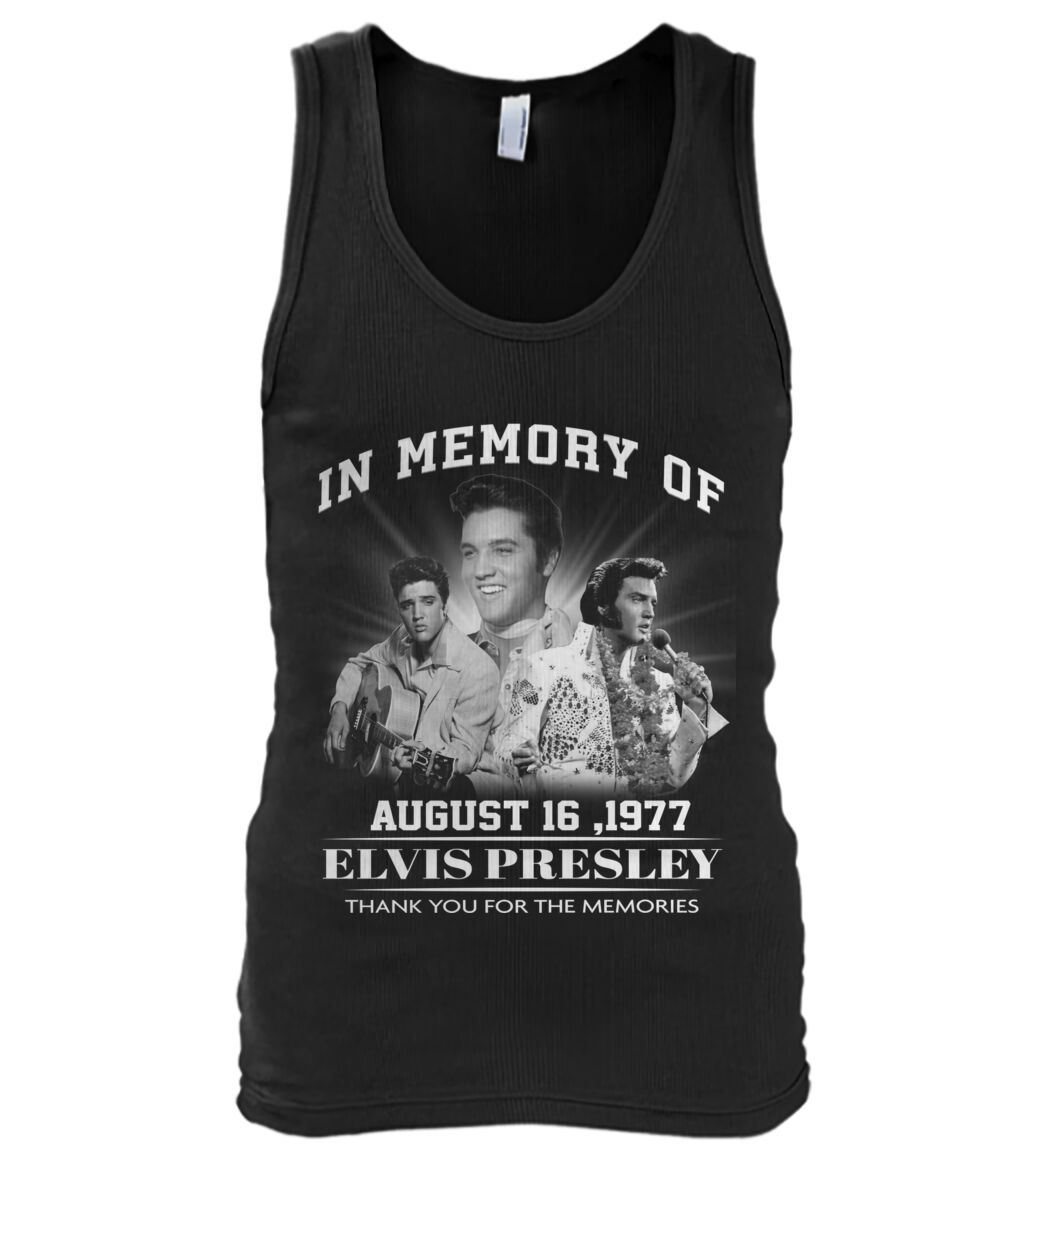 In memory of Elvis Presley August 16 1977 tank top